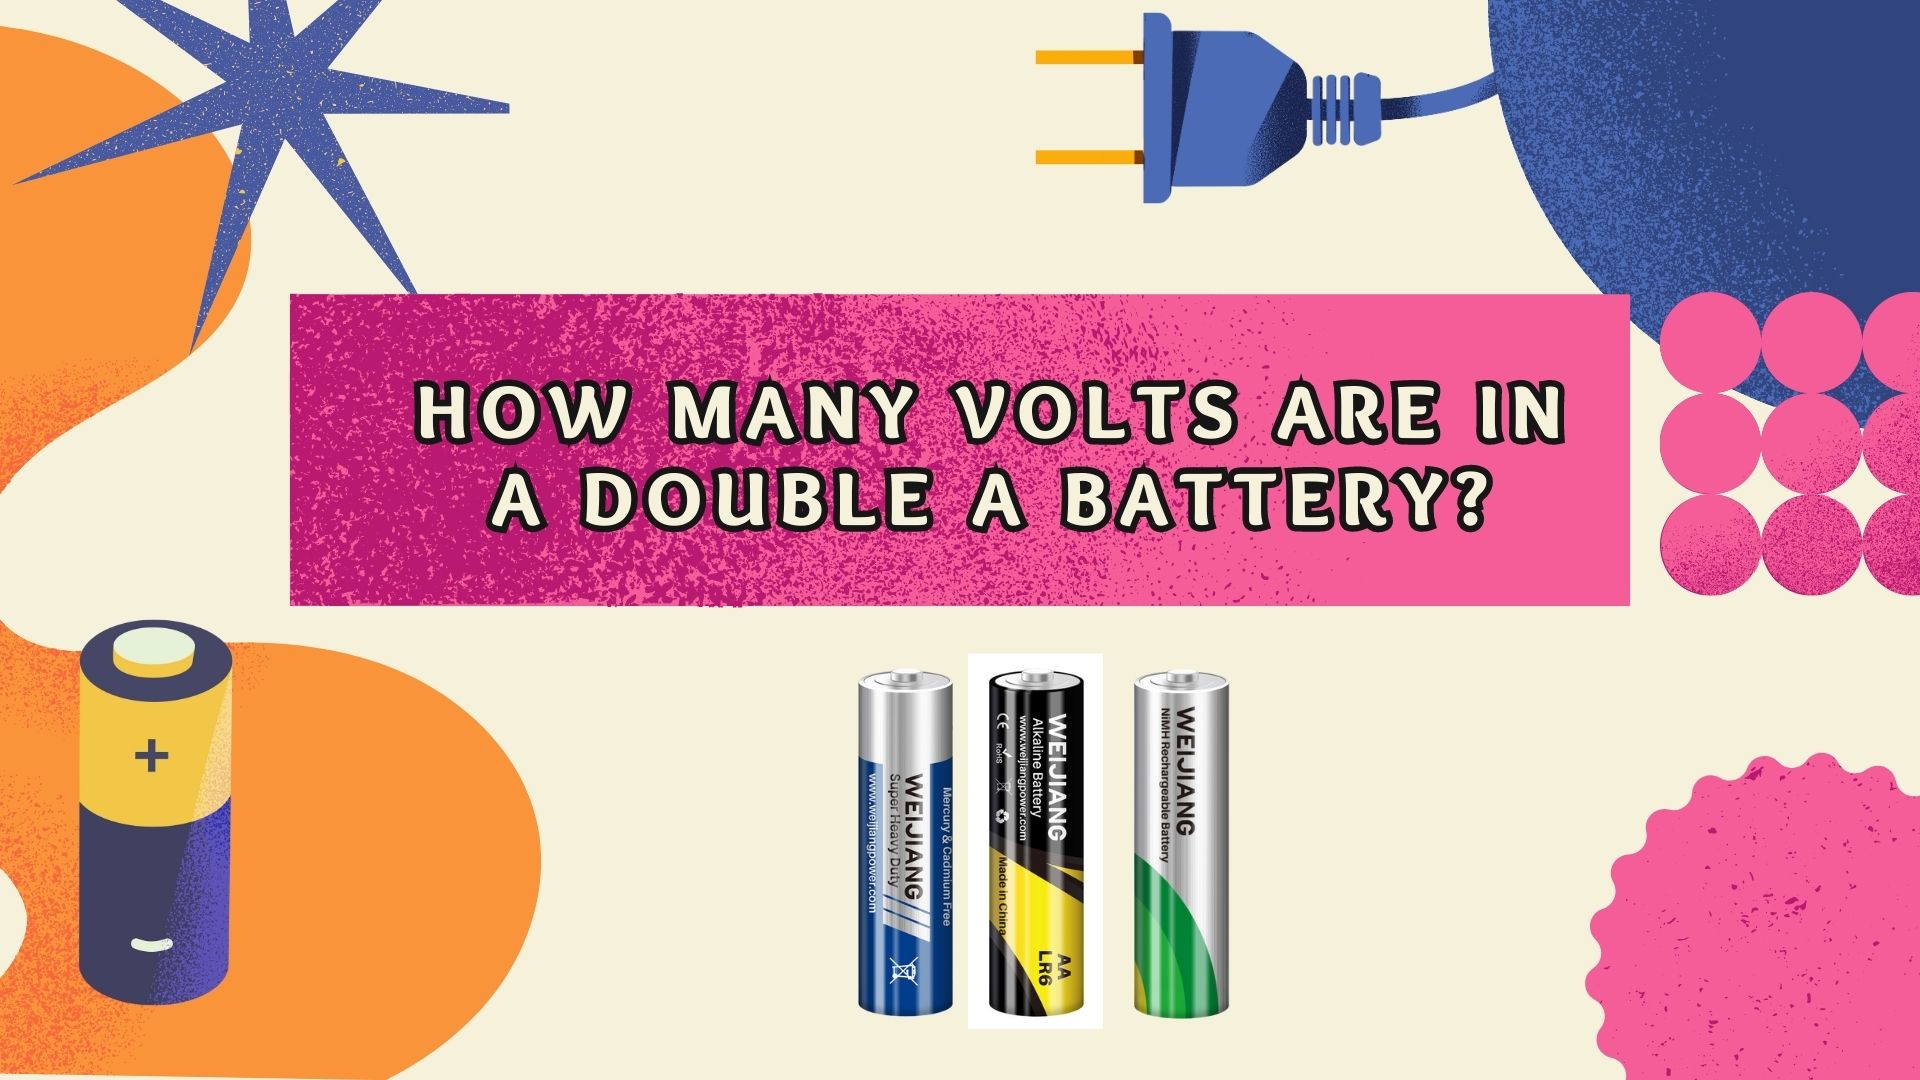 Koliko volti ima u duploj A bateriji